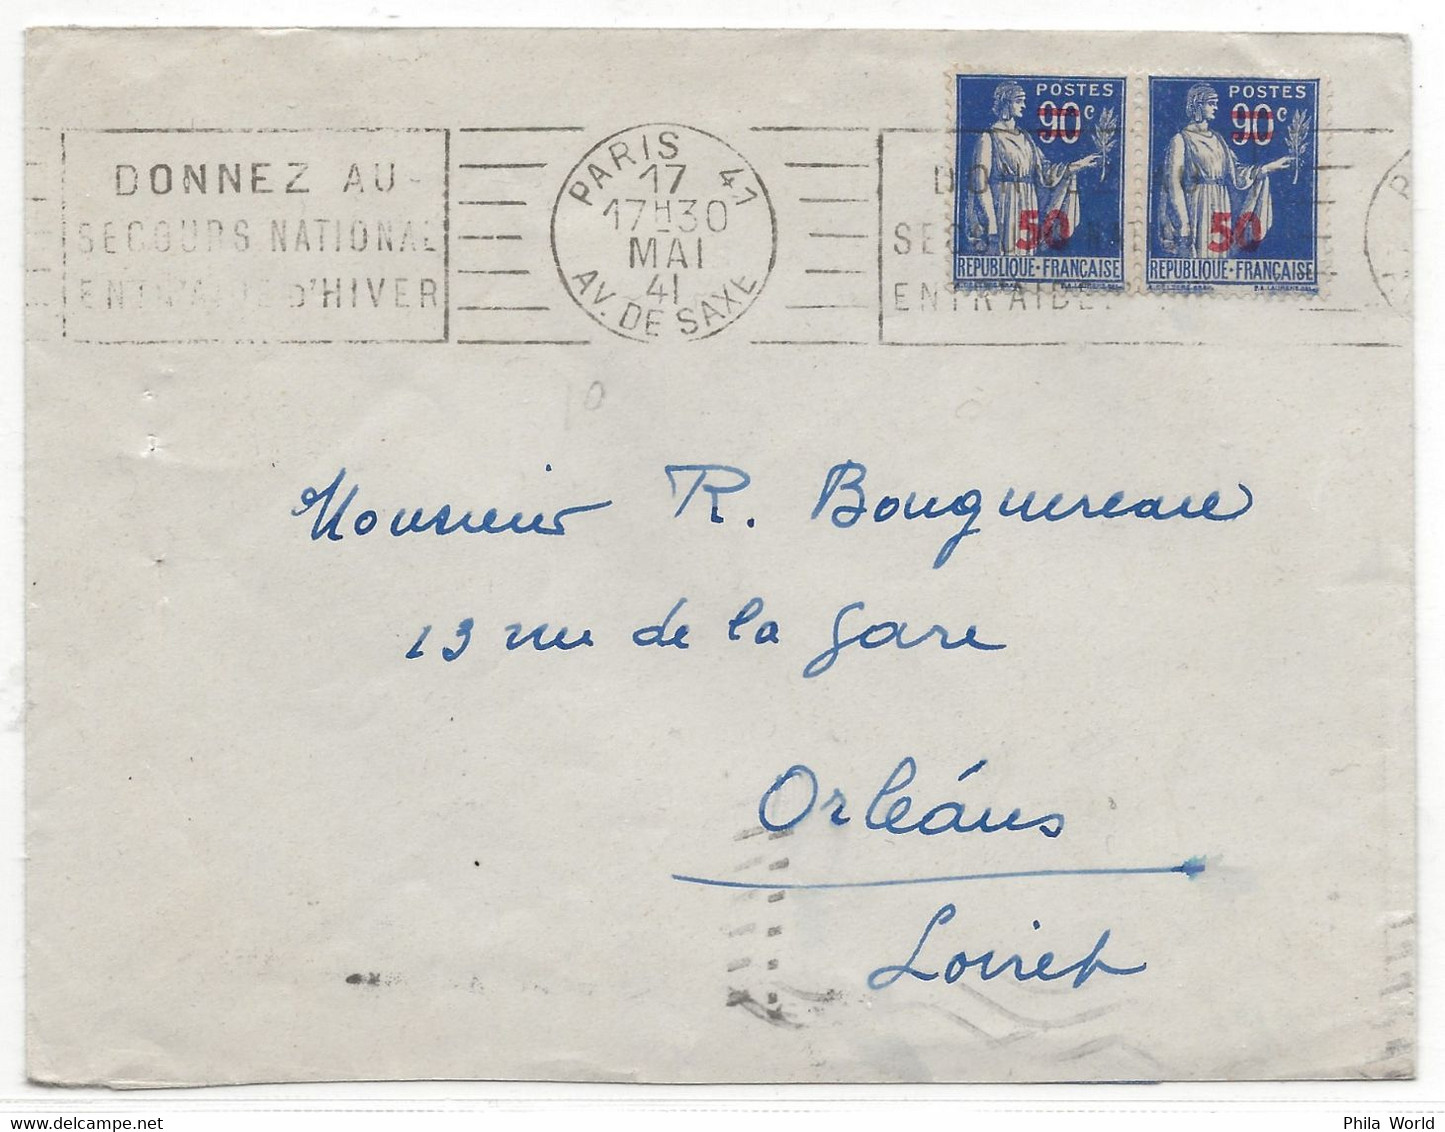 WW2 FRANCE 1941 Type PAIX Surcharge PARIS 41 SAXE DONNEZ SECOURS NATIONAL ENTRAIDE HIVER > Orleans LOIRET - Lettres & Documents